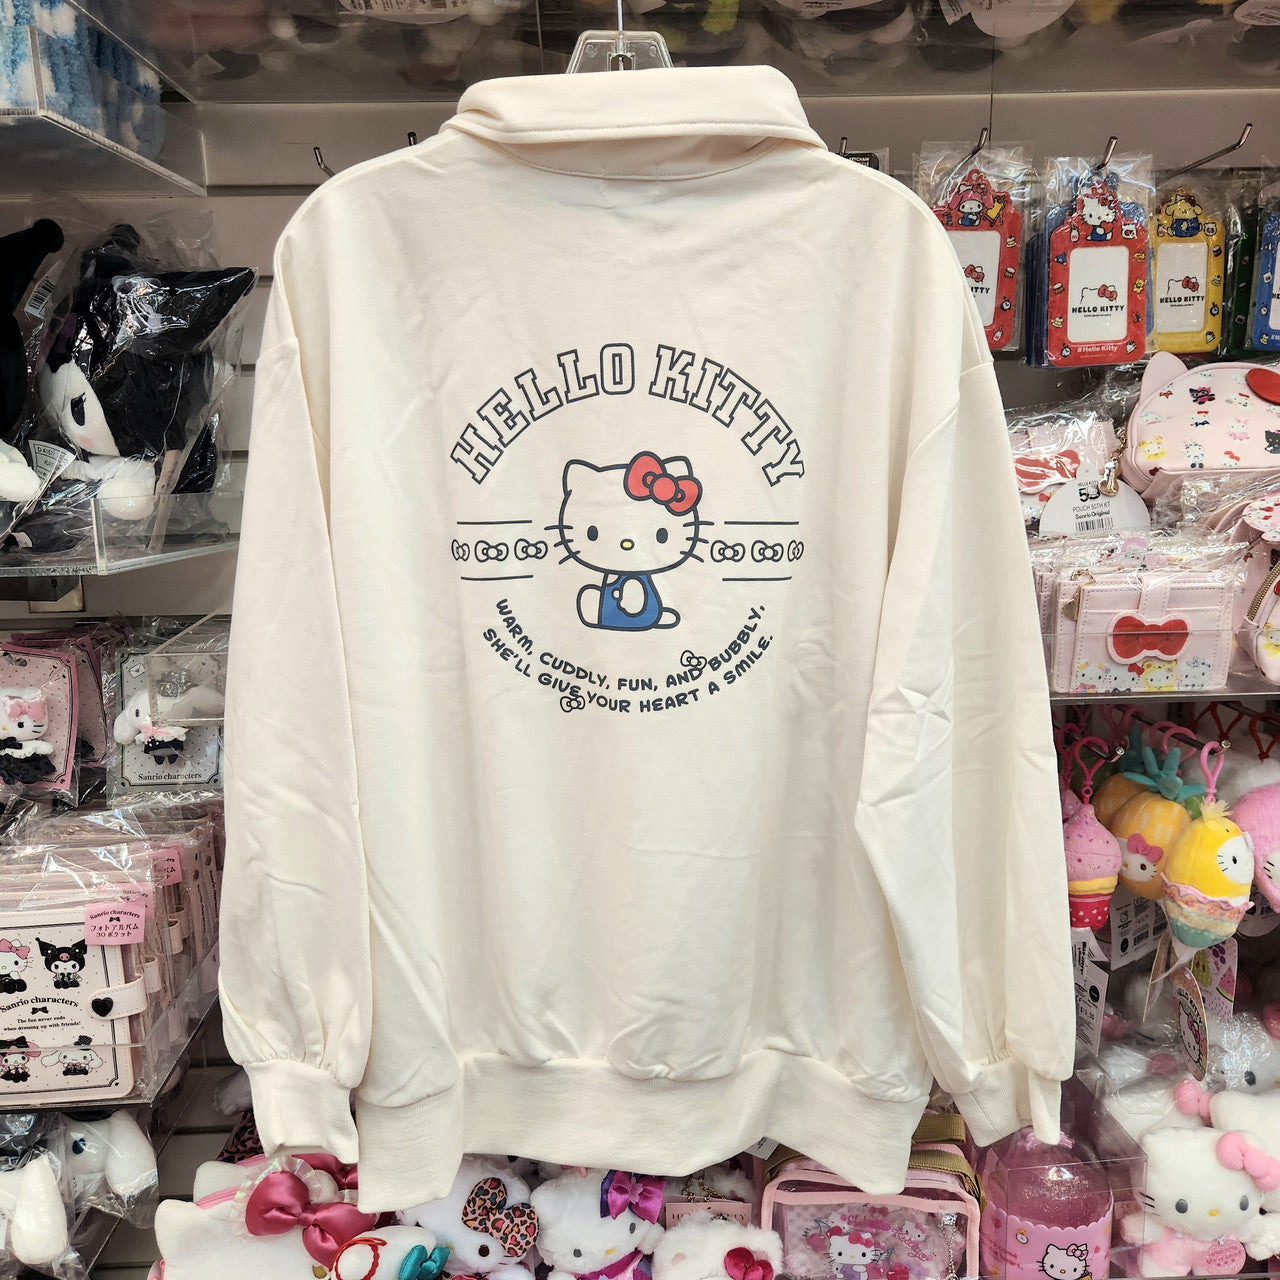 Sanrio Half-Zip Sweatshirt